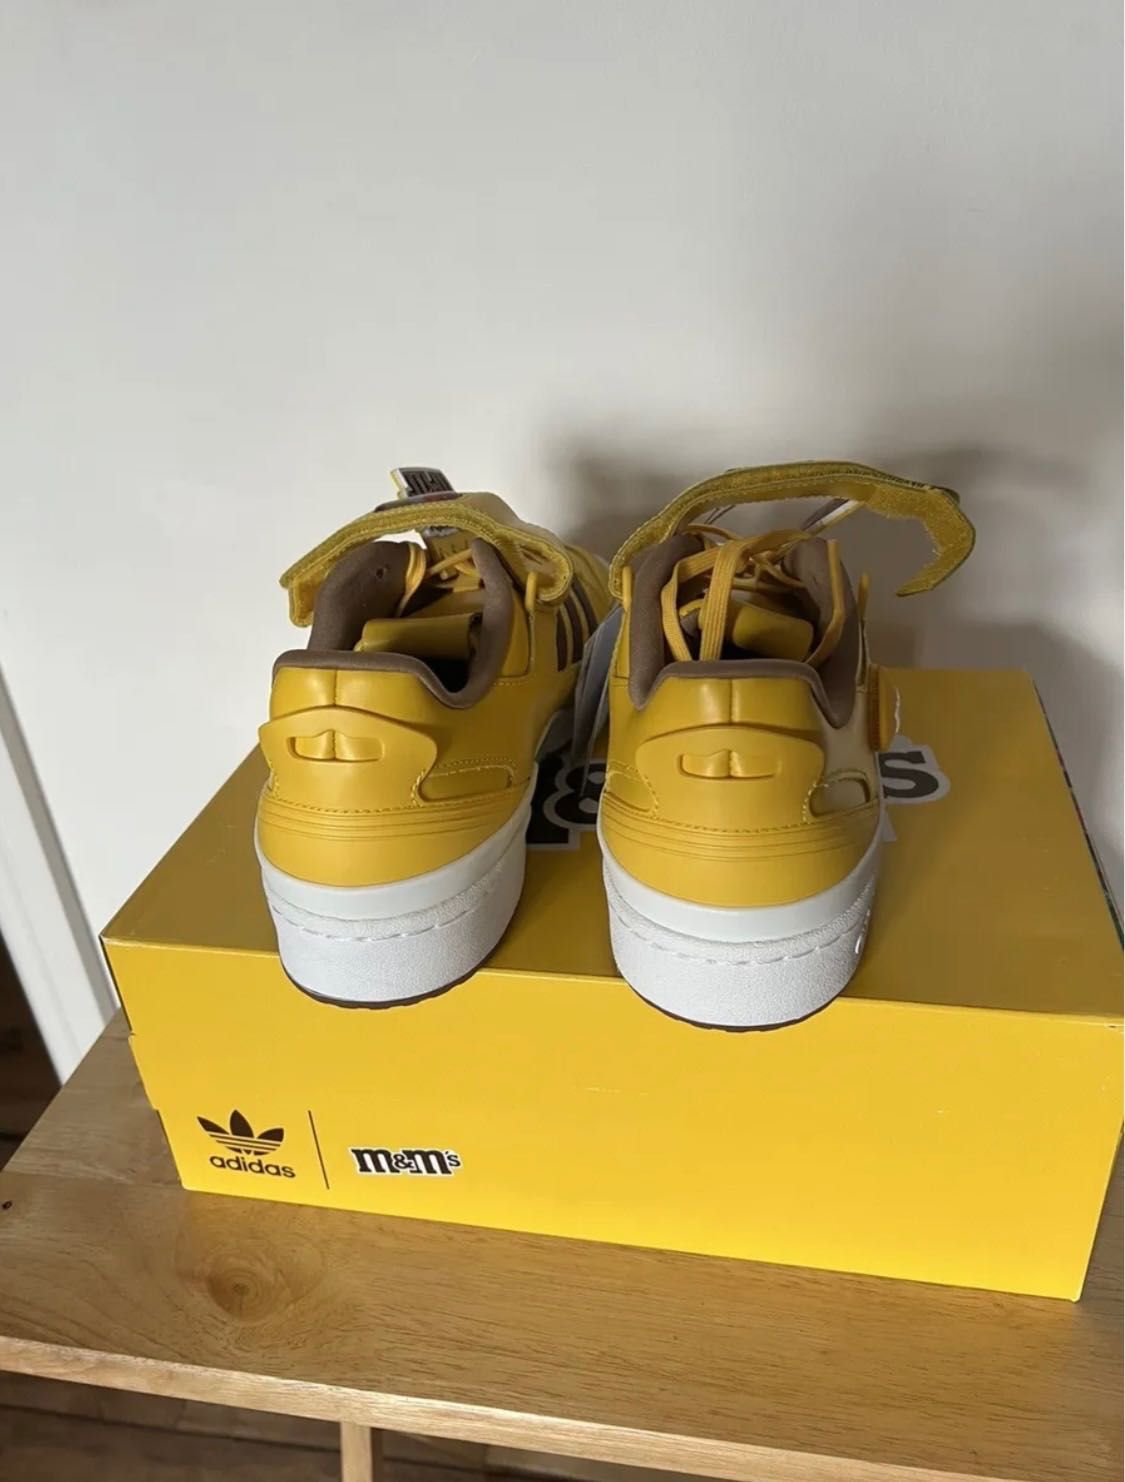 Adidas Forum x M&M’s новые кроссовки, оригинал 100%